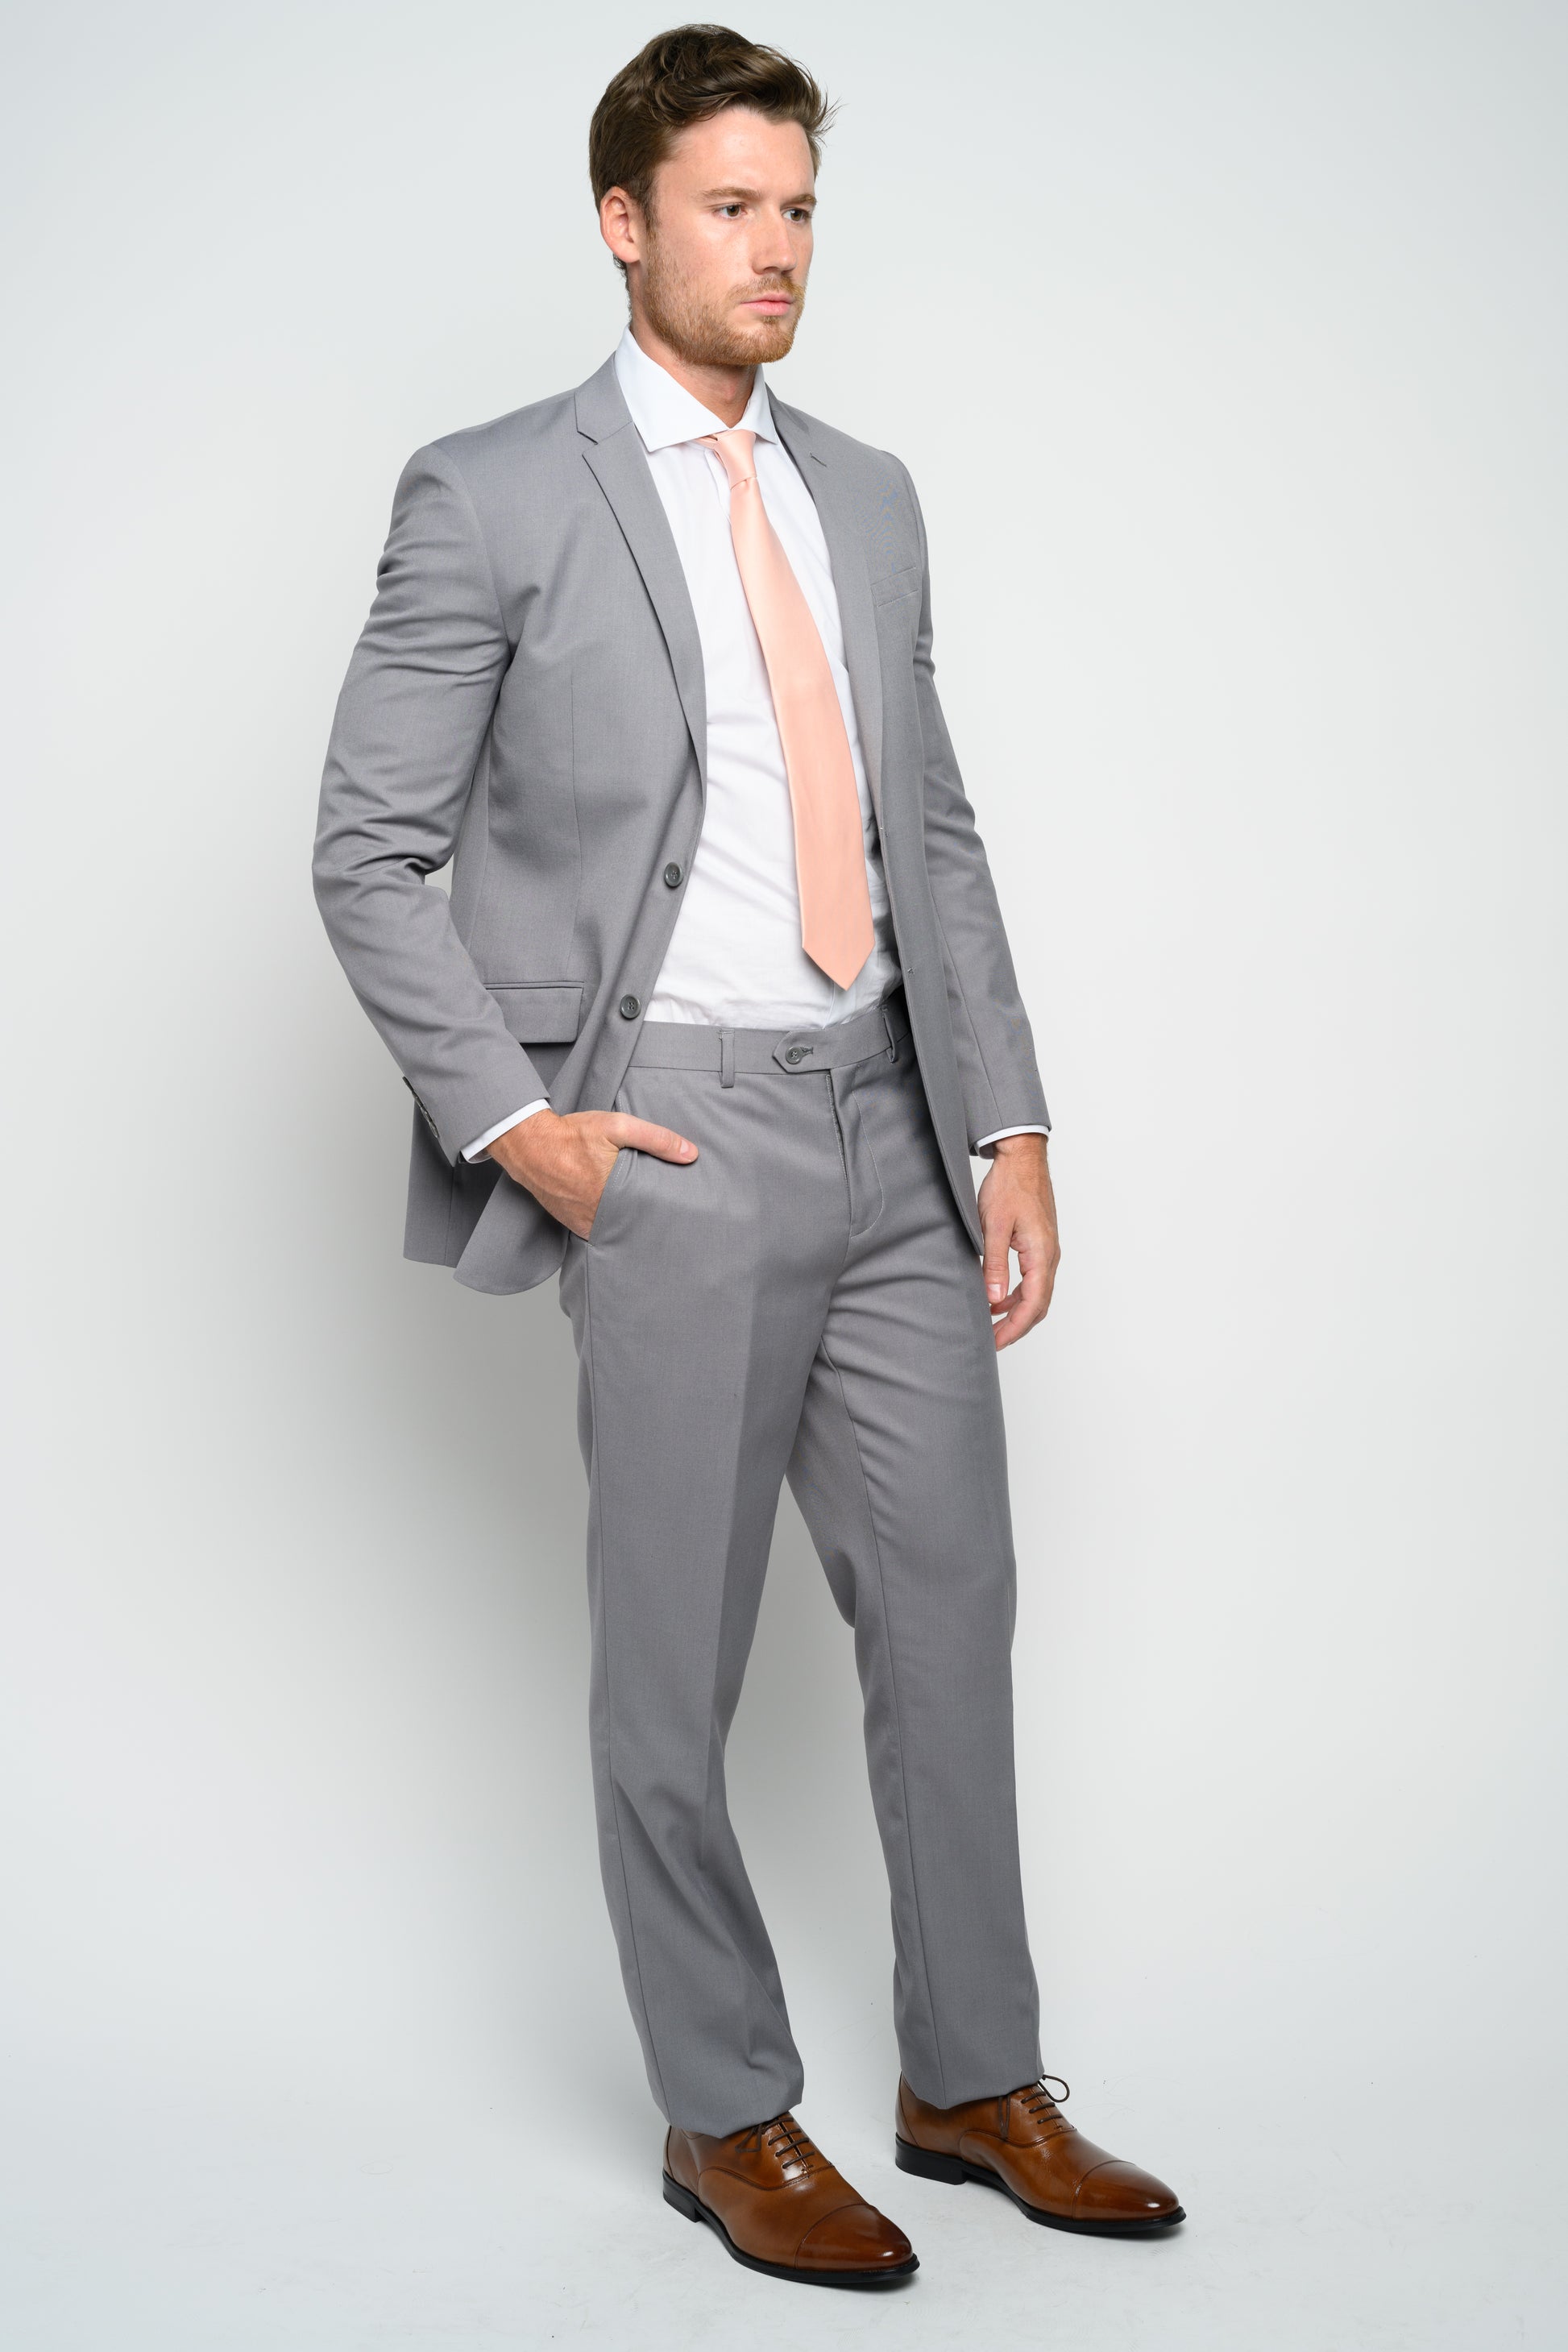 Men's Light Grey Slim Fit Suit